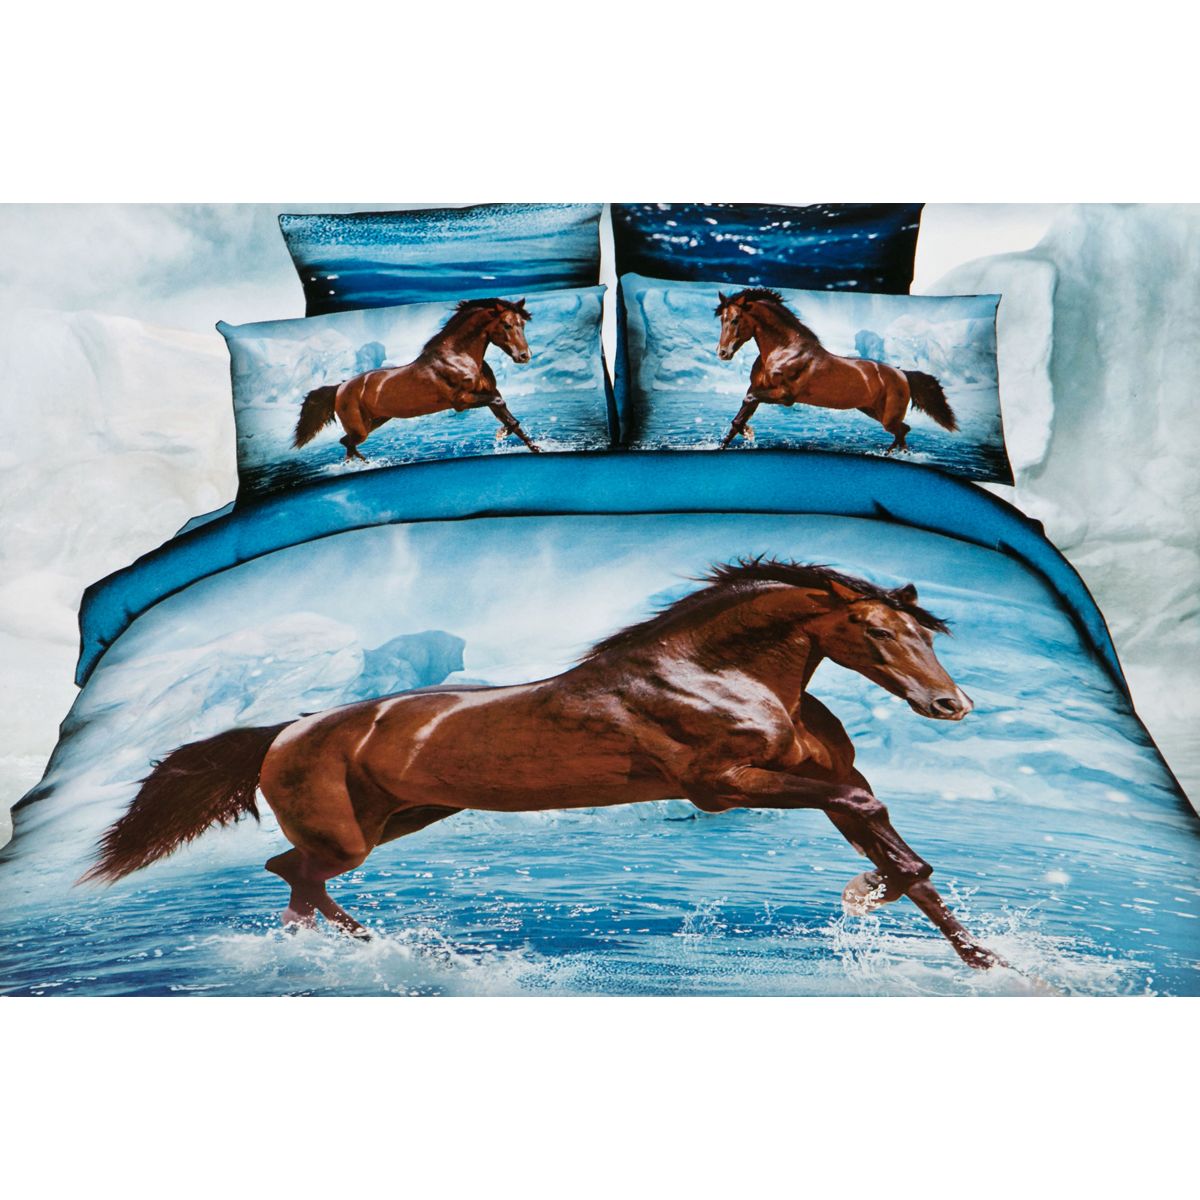 Комплект постельного белья Horse&Blue, Евро, 200х220 см, 215х240 см, Хлопок, Gree Textile, Китай